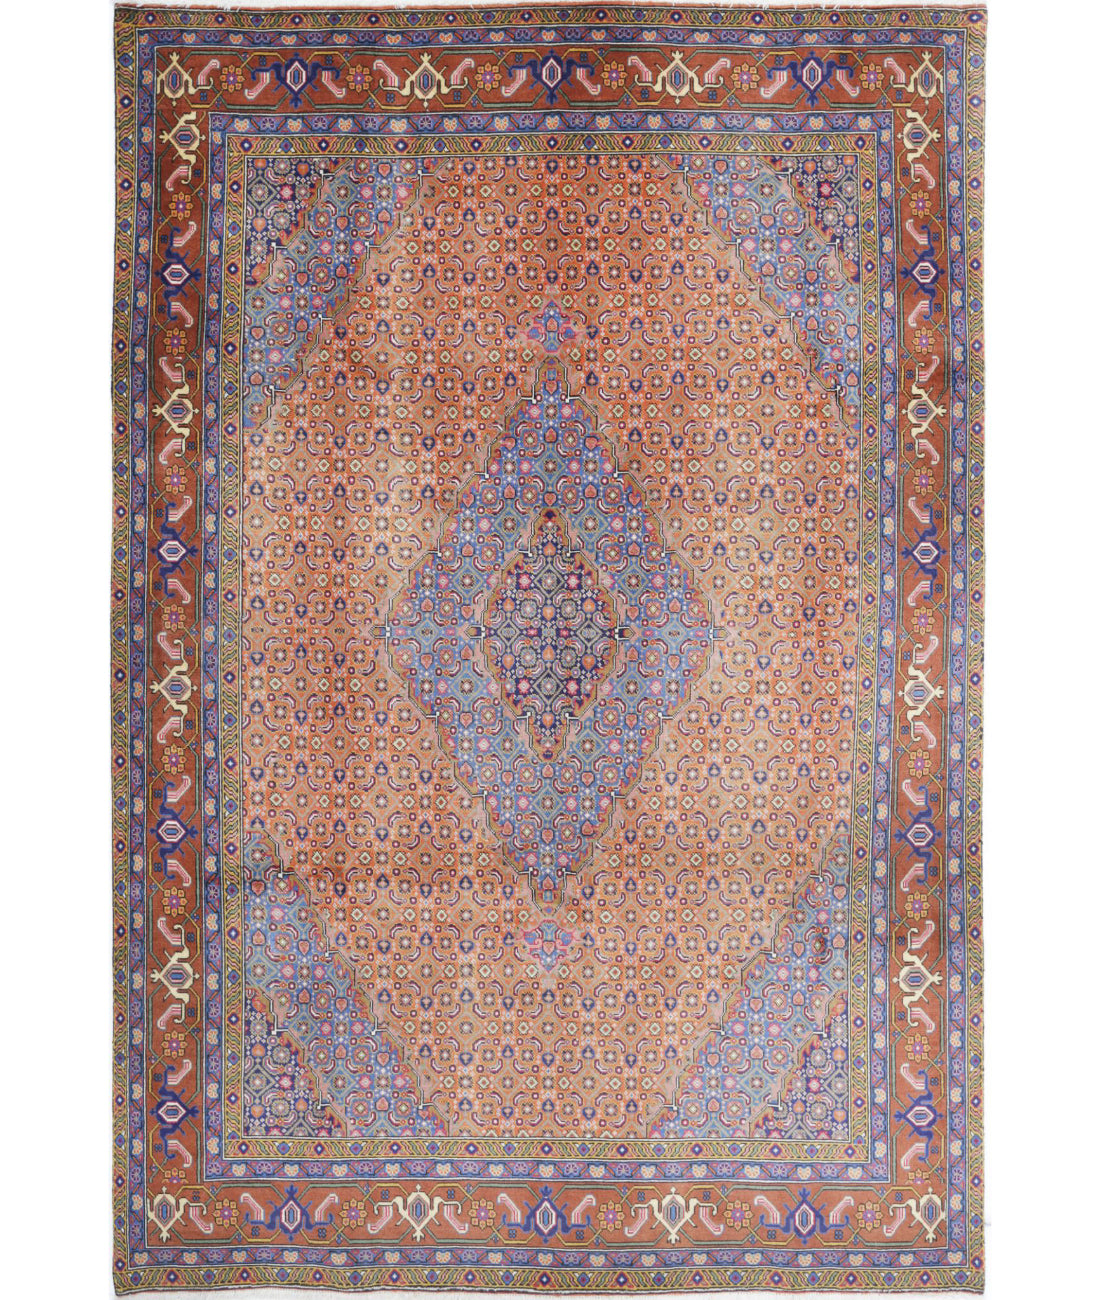 Hand Knotted Persian Bijar Wool Rug - 6&#39;8&#39;&#39; x 9&#39;9&#39;&#39; 6&#39;8&#39;&#39; x 9&#39;9&#39;&#39; (200 X 293) / Rust / Brown